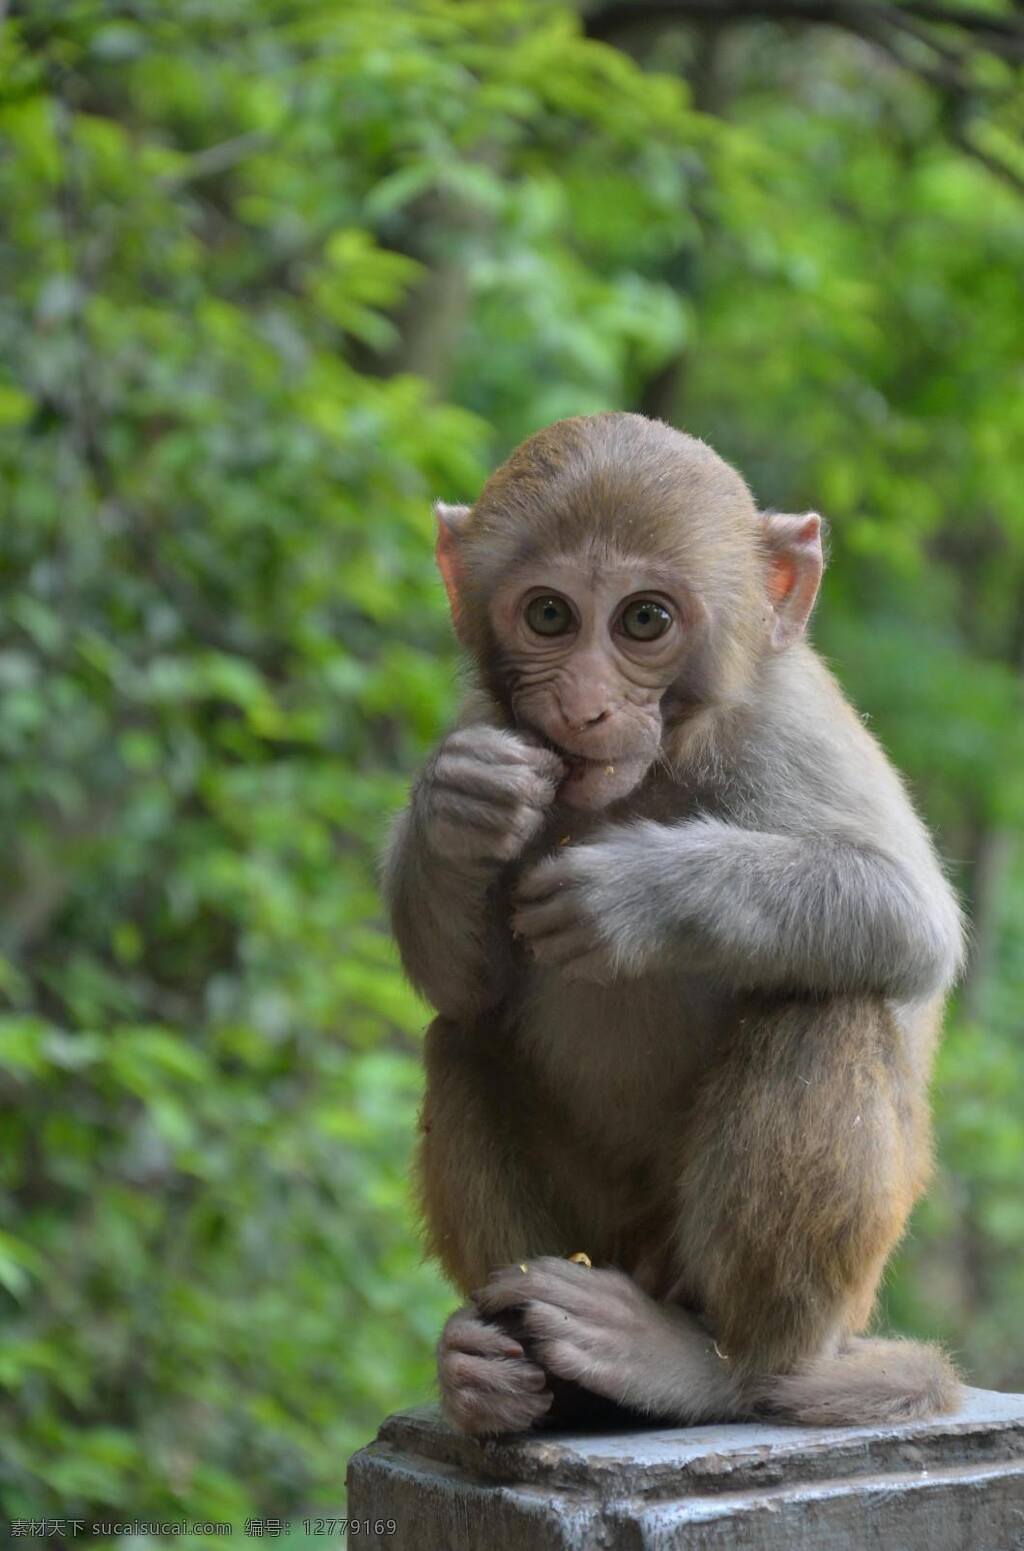 猴子 迷你猴子 野生 猴子摄影 猴子拍摄 猴子吃蛋 小猴子 动物园 动物园的猴子 动物摄影 可爱瞬间 金丝猴 野生金丝猴 吃橘子 猴子吃东西 猴子吃饭 生物世界 野生动物